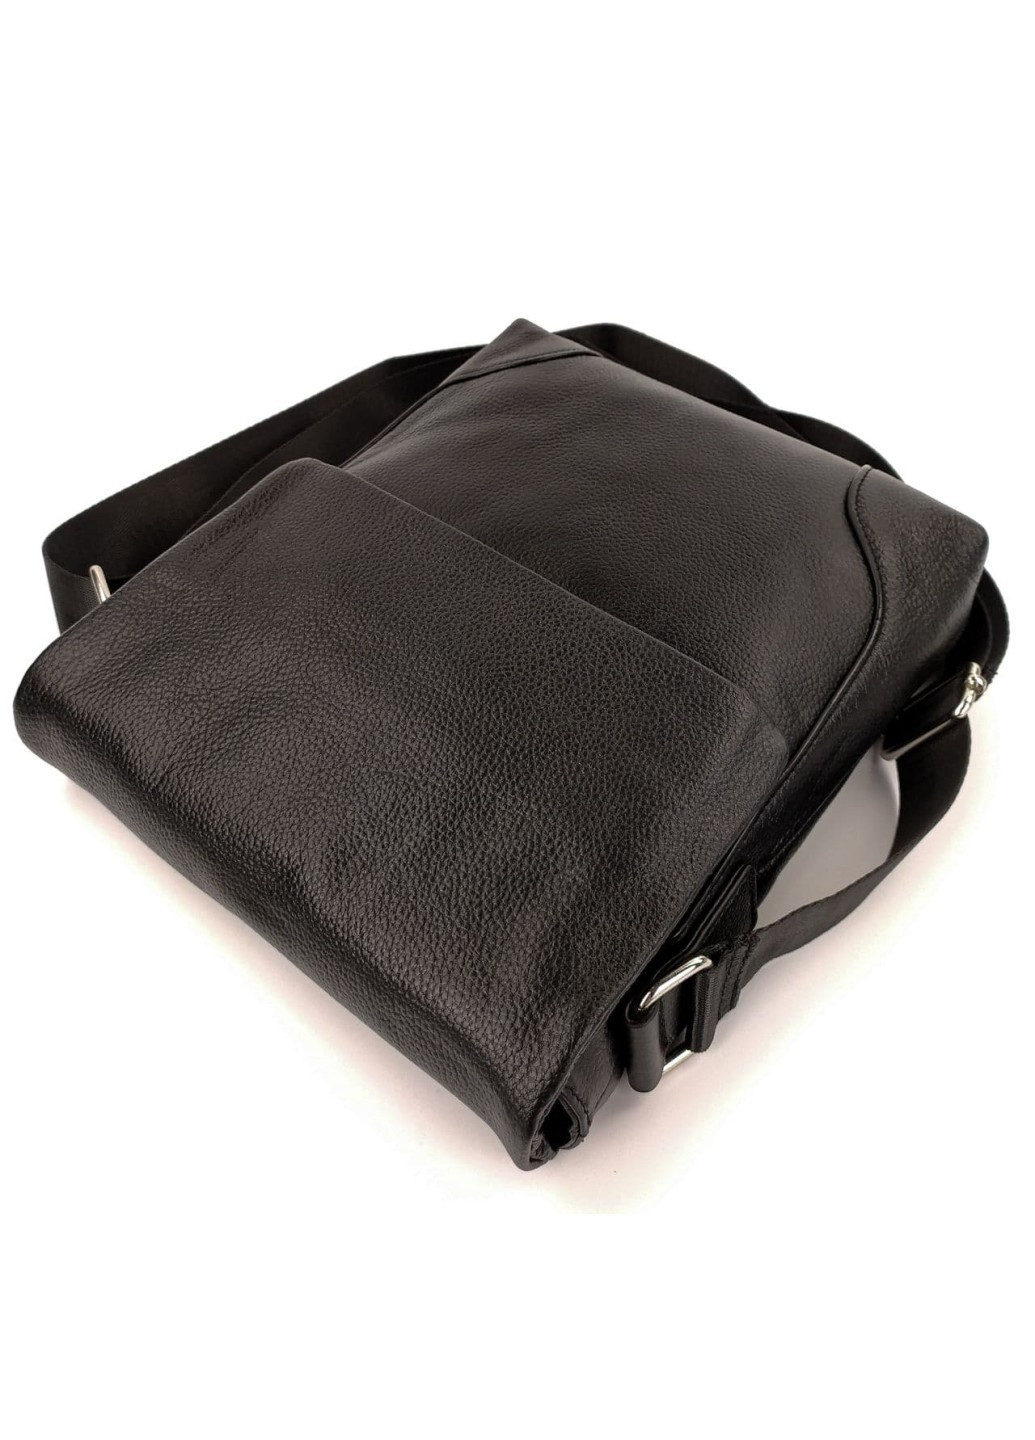 Небольшая сумка - барсетка из кожи NS0011 черная JZ (259737067)